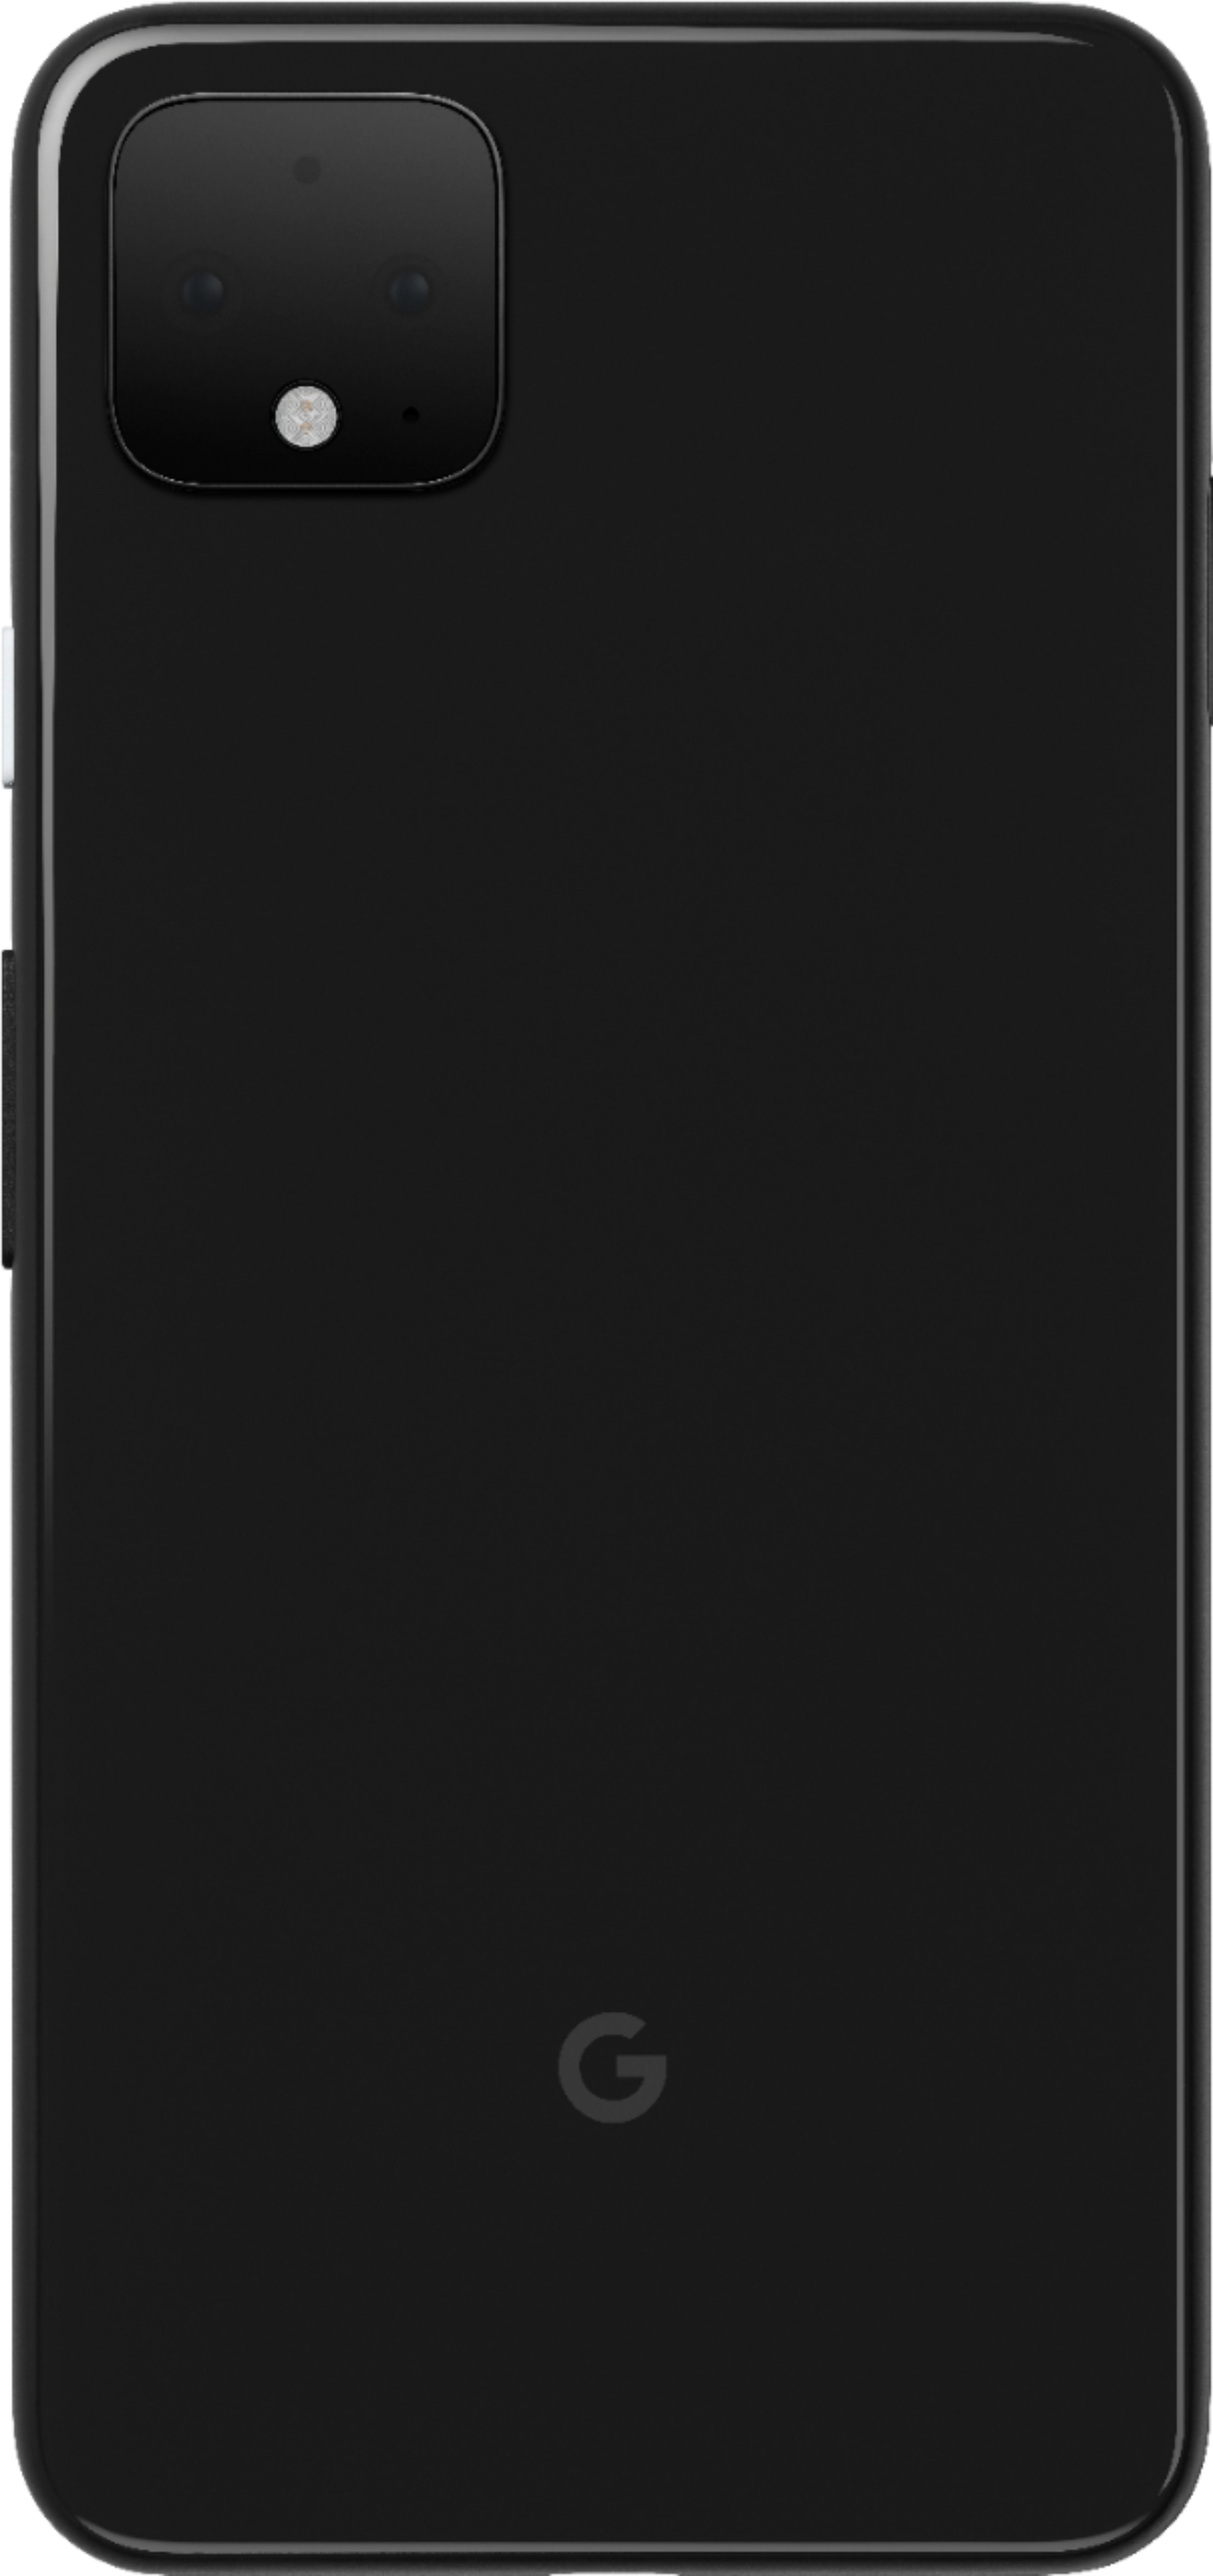 Google Pixel 4 XL 64GB  Just Black